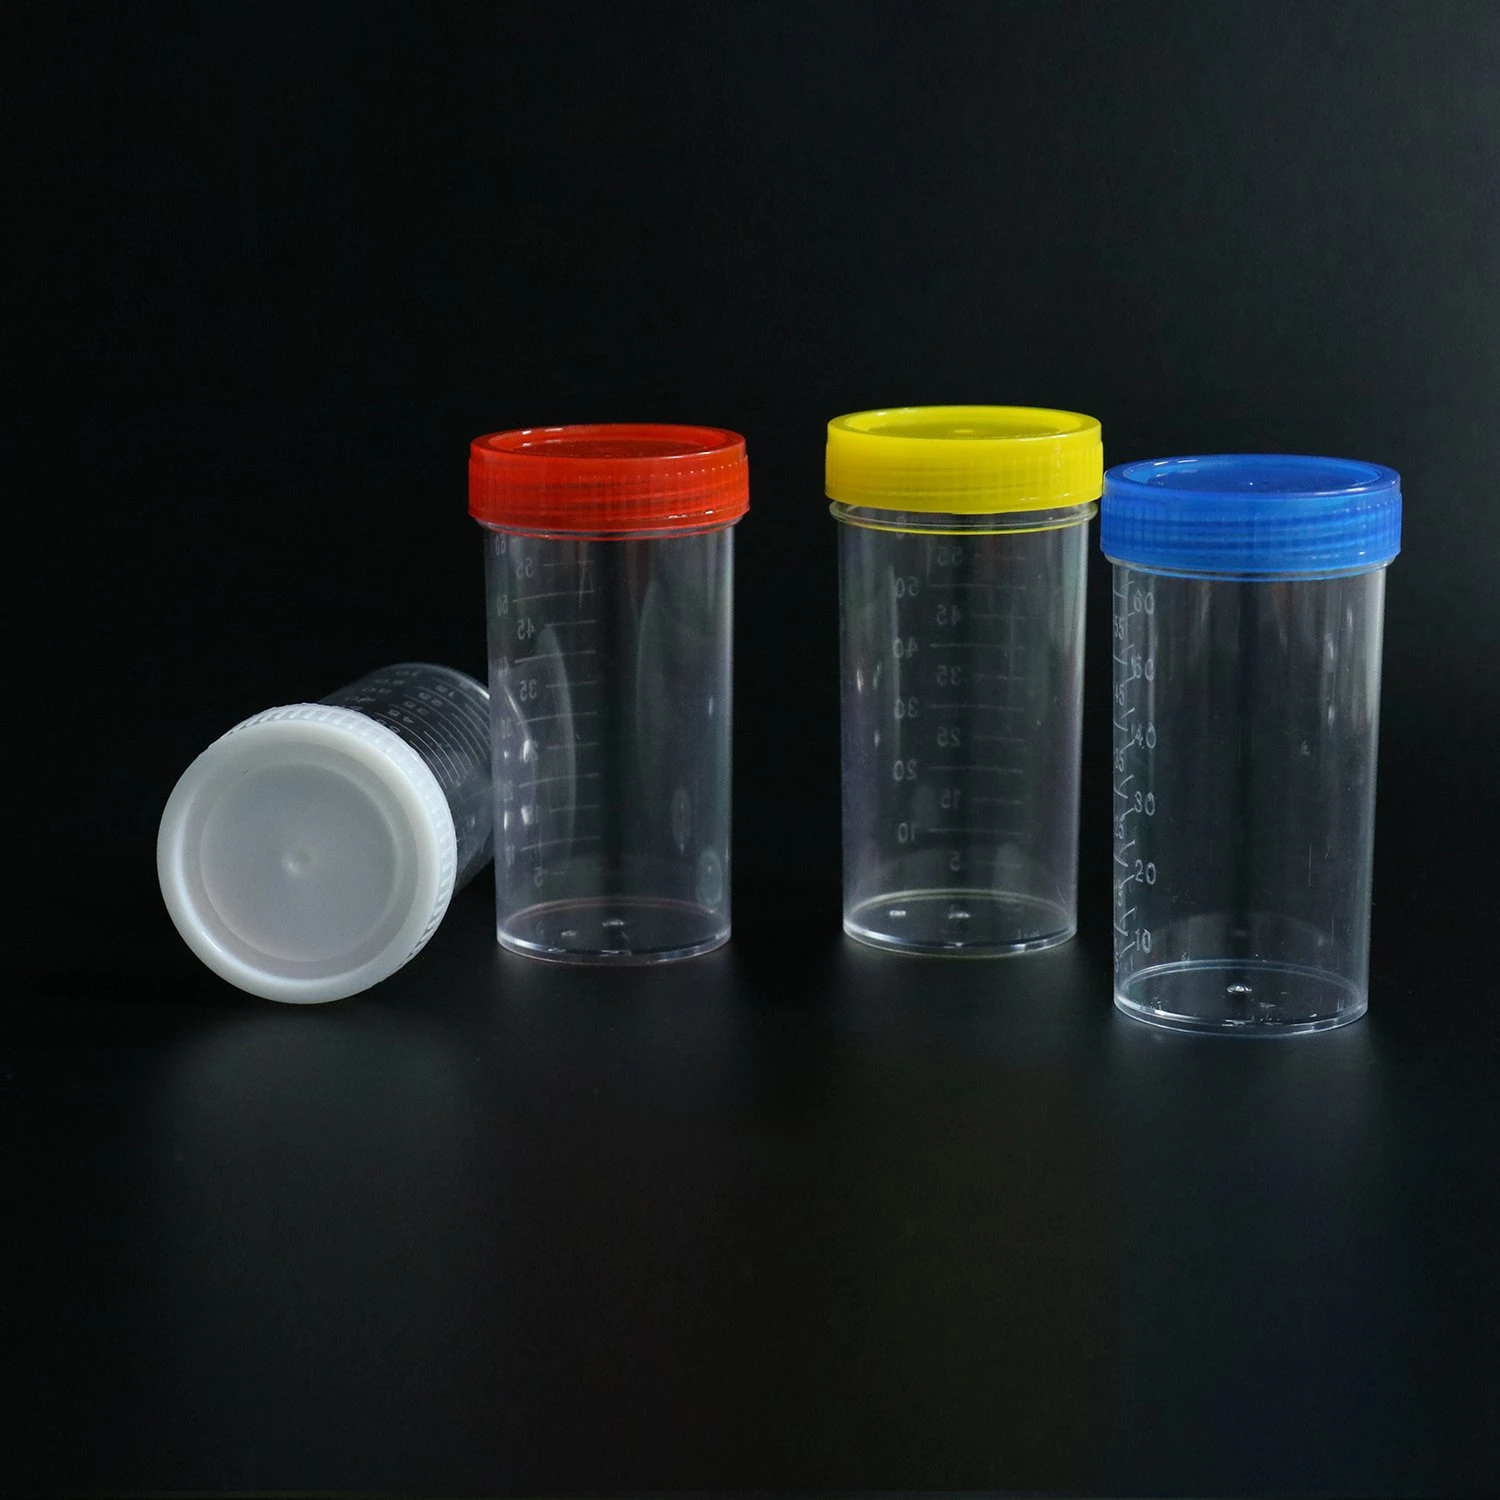 30 ml de contêiner estéril Produtos médicos Copo de amostra de urina